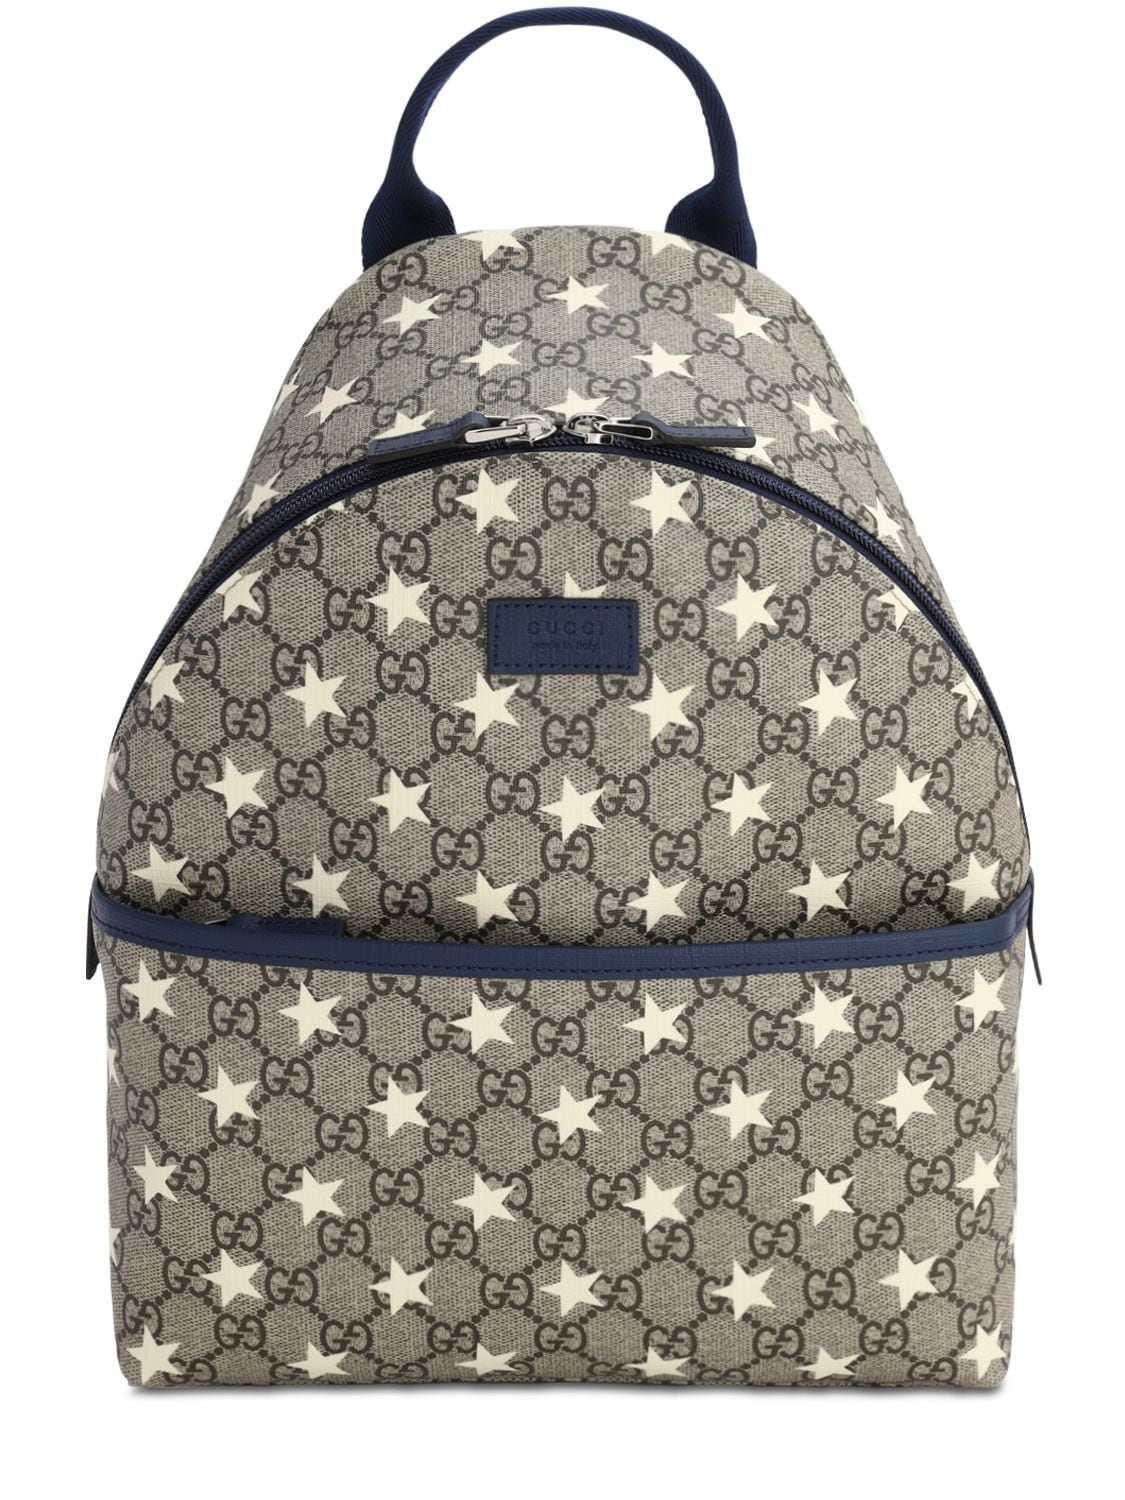 Gucci Kids' Gg Supreme Stars Print Backpack In Beige